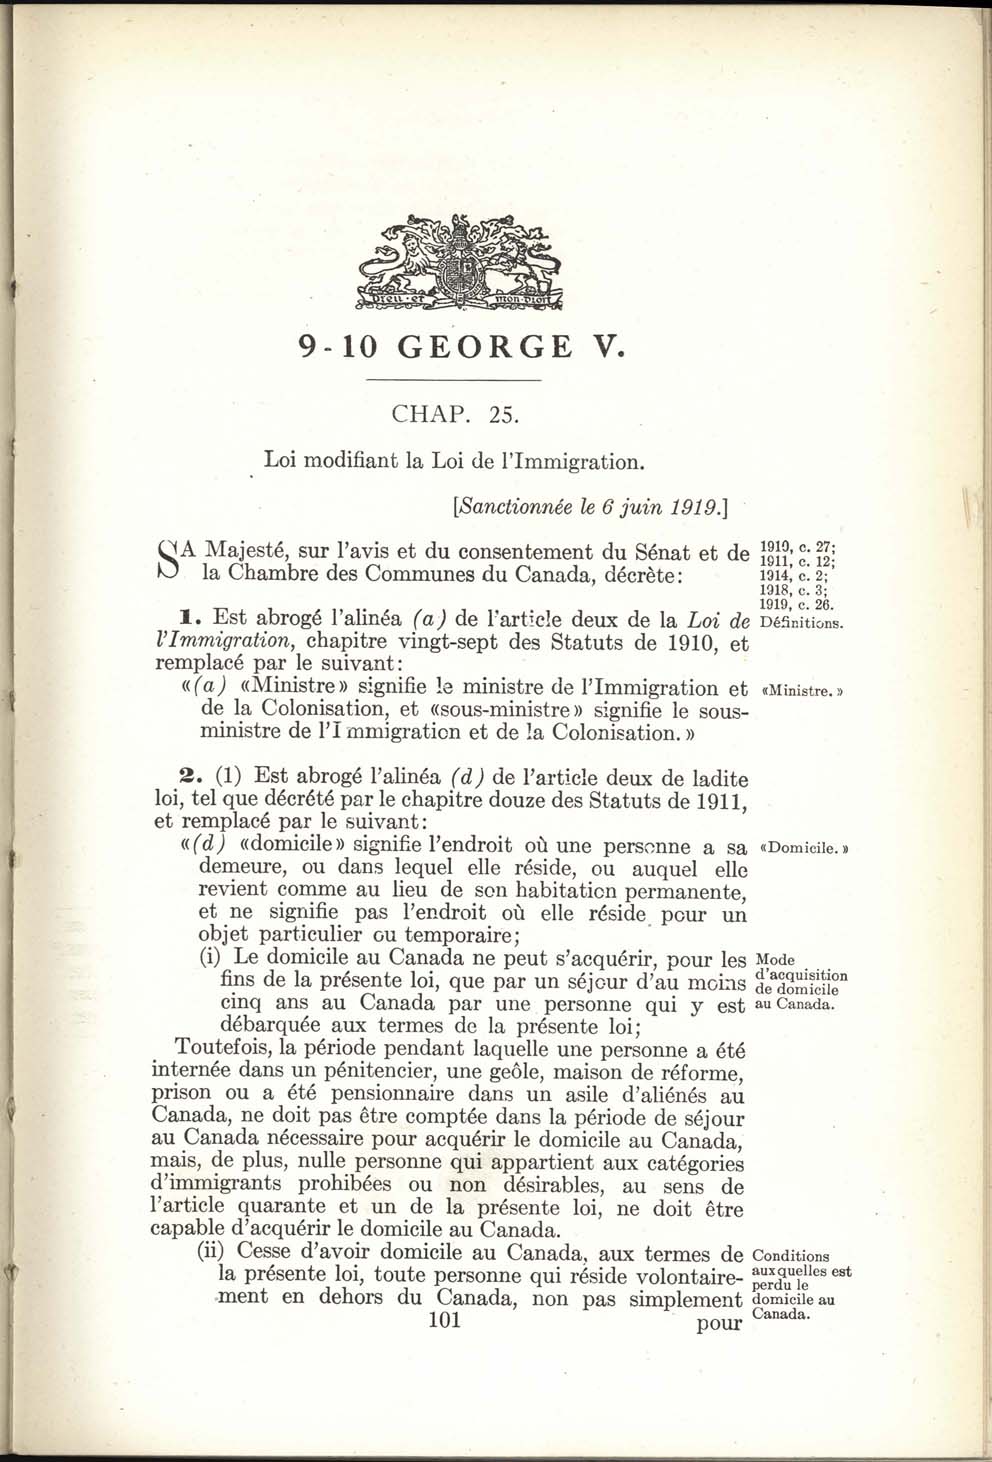 Chap. 25 Page 101 Loi de l’immigration amendement, 1919